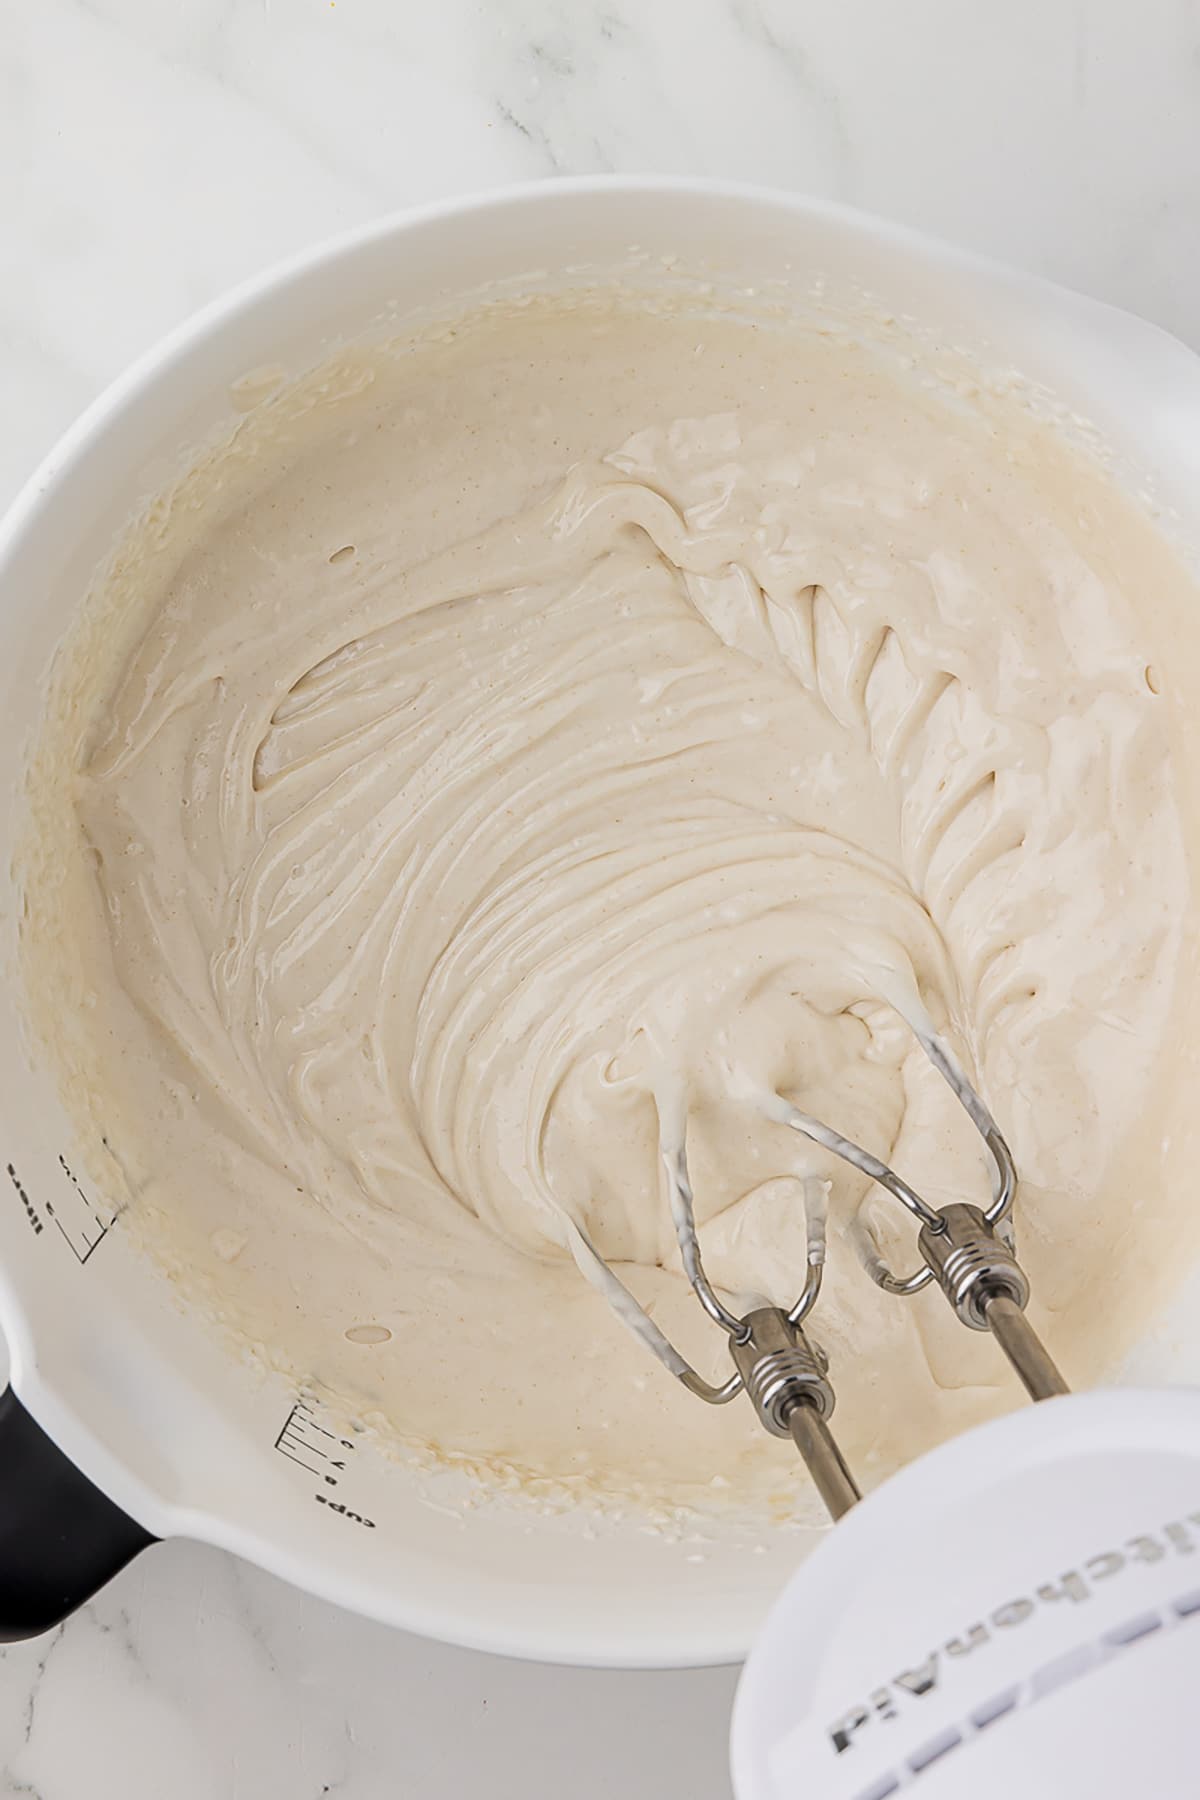 kitchenaid mixer in white batter bowl mixing cake goop